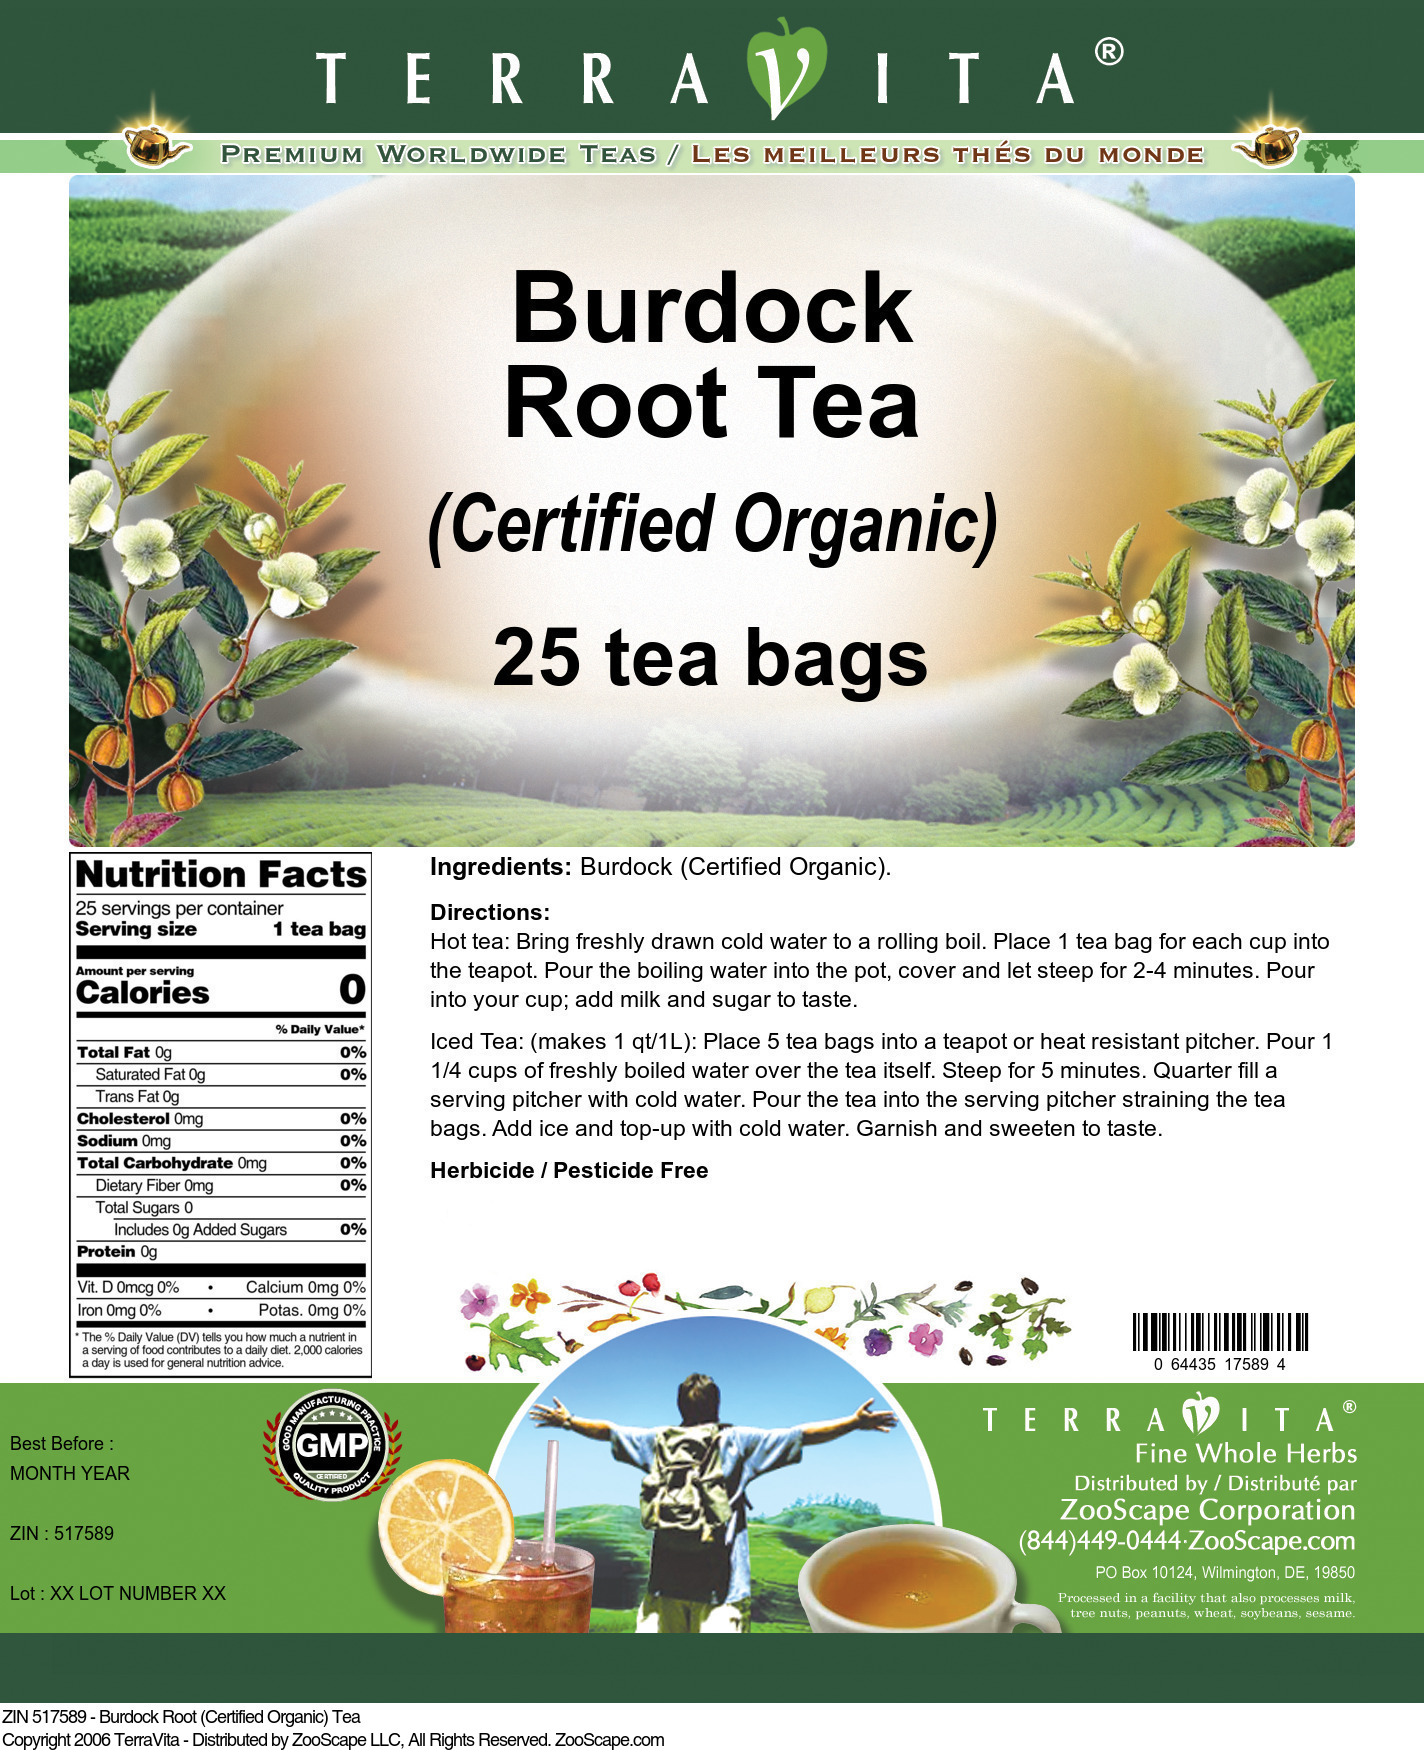 Burdock Root (Certified Organic) Tea - Label